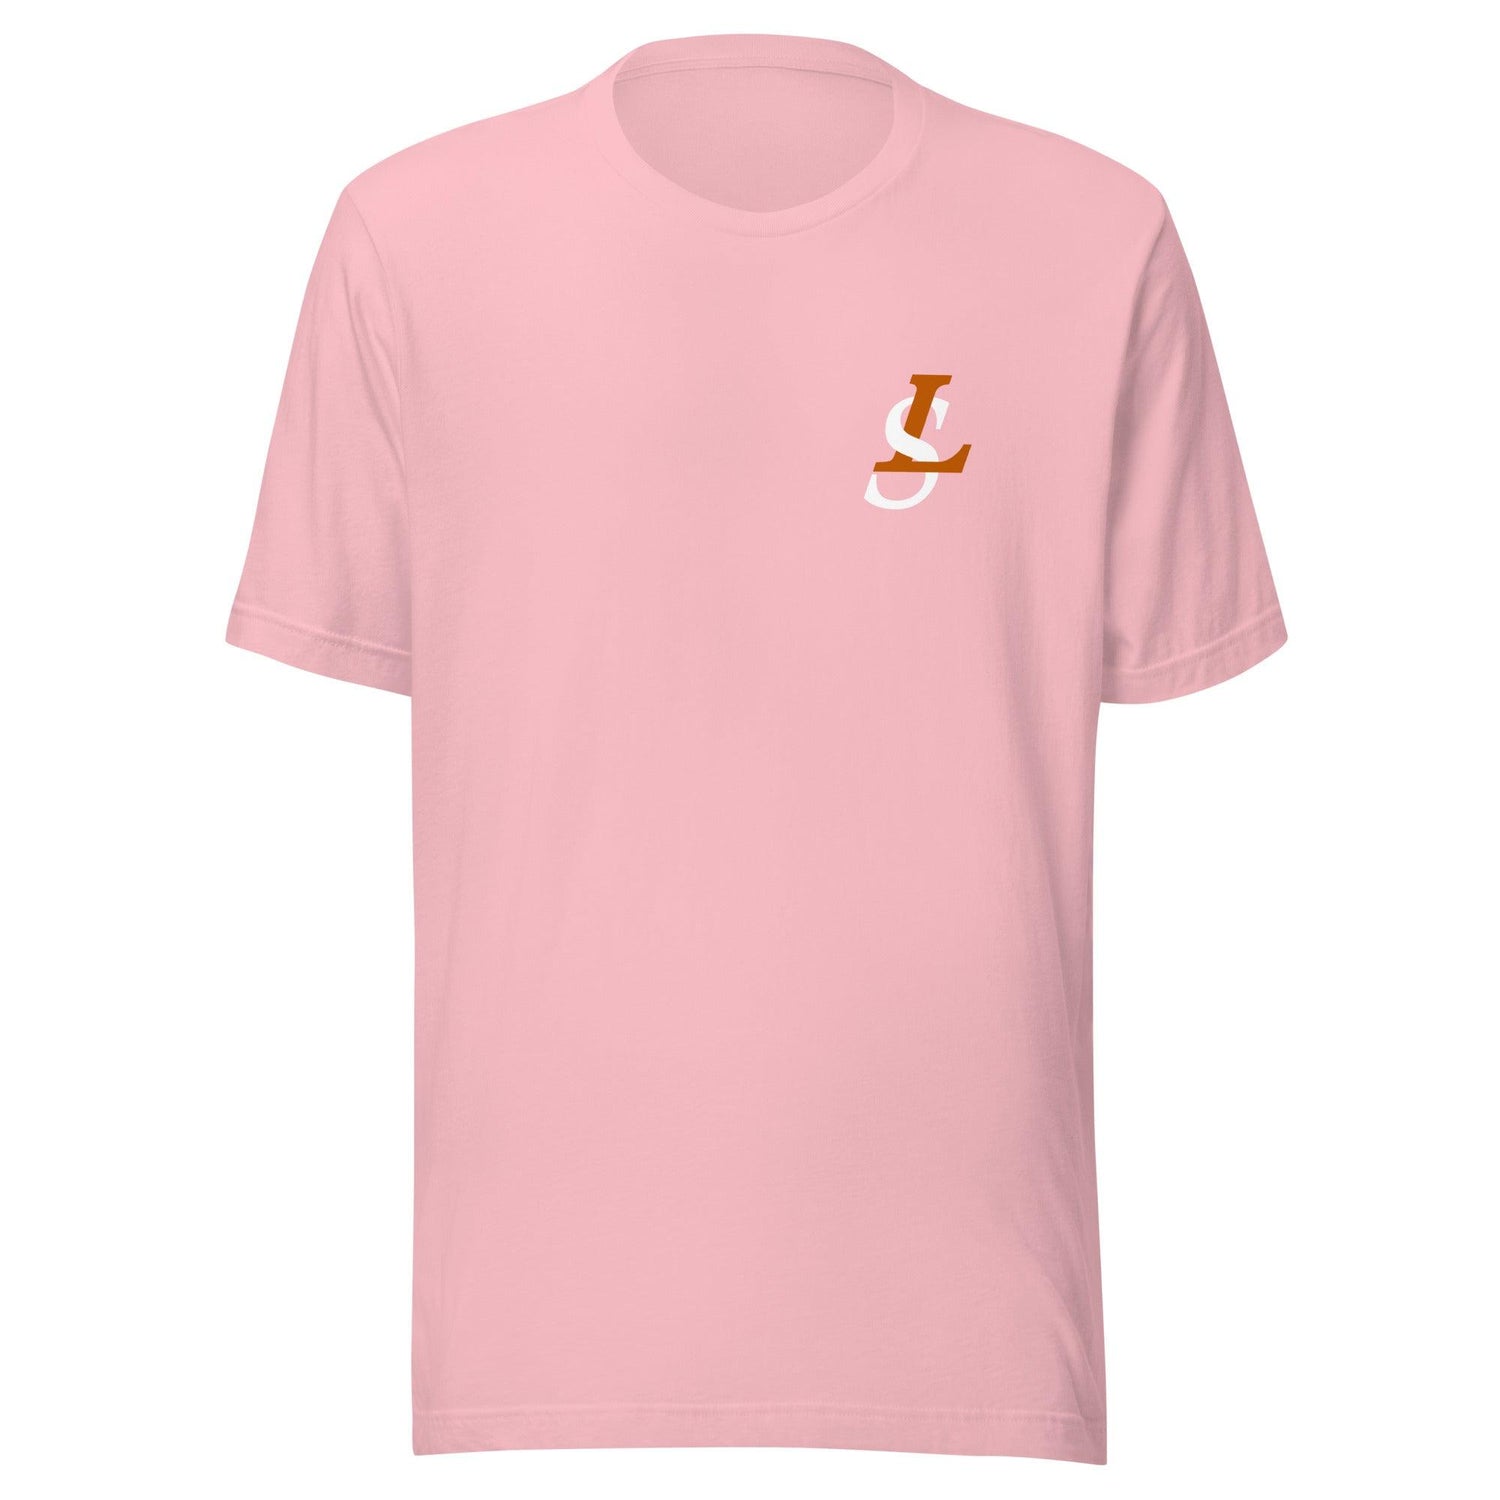 Lance St. Louis "Signature" t-shirt - Fan Arch